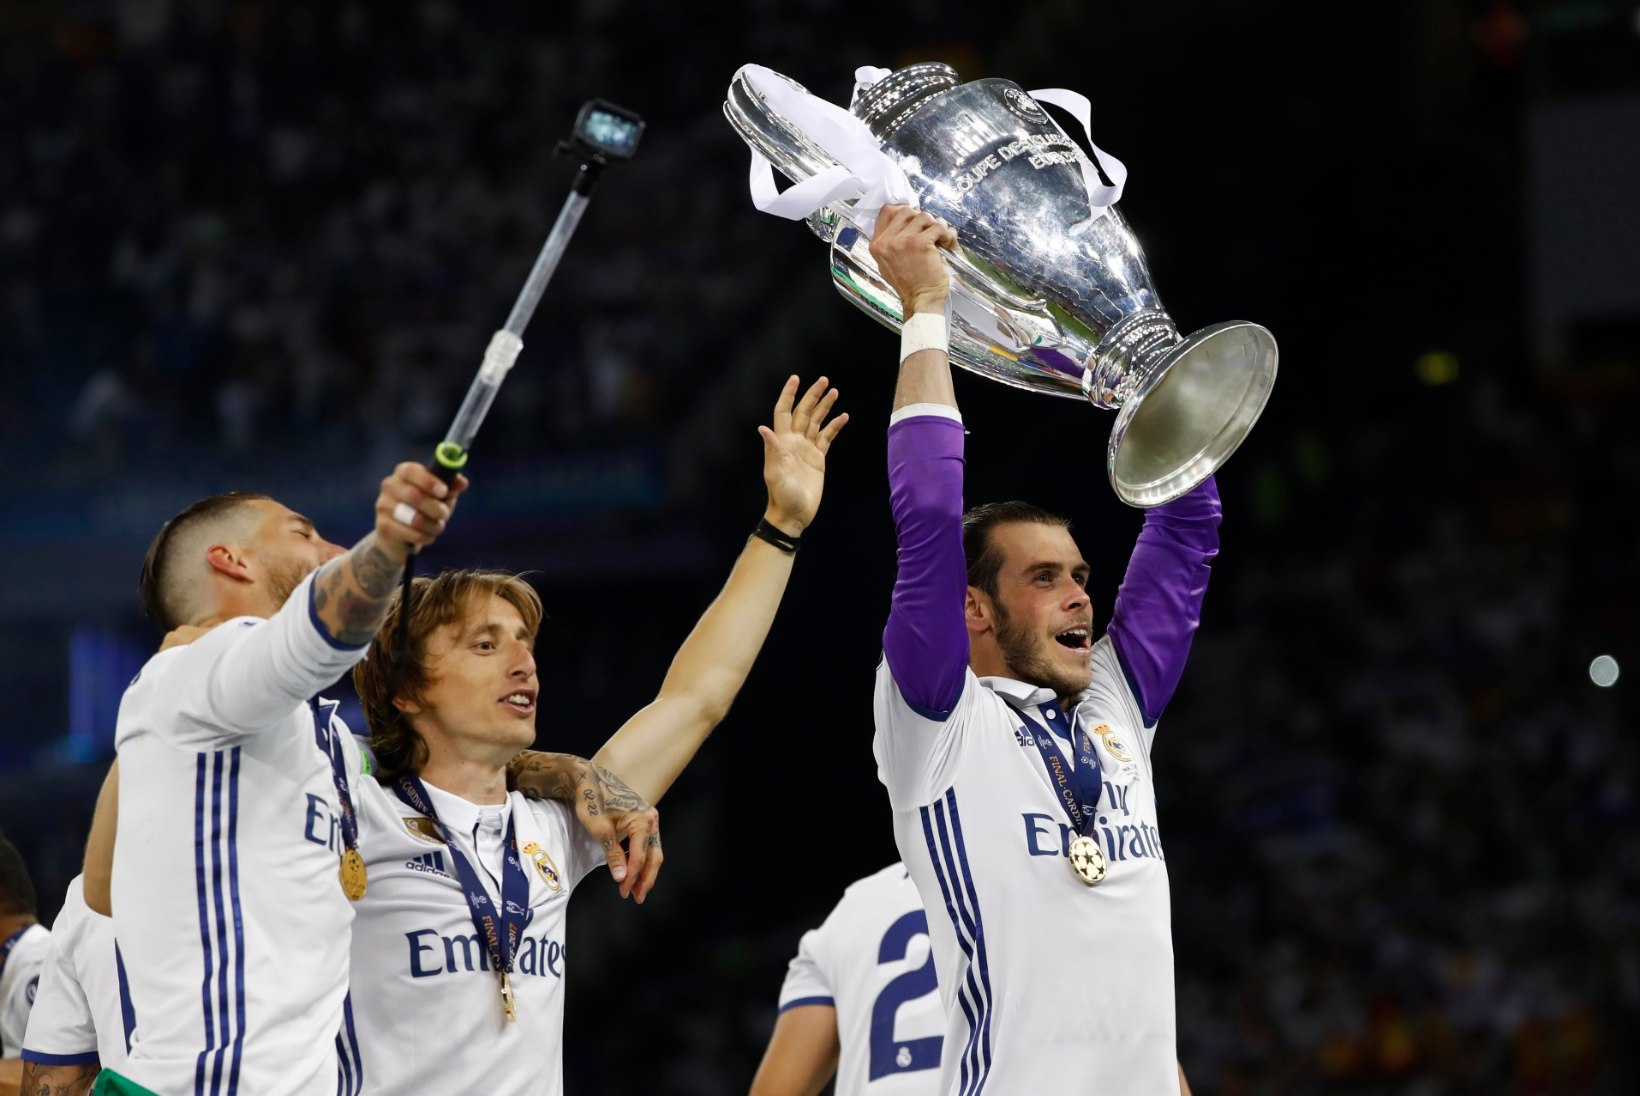 "Viva Gareth Bale!" – Walesi rahva pidu Madridi Reali võtmes